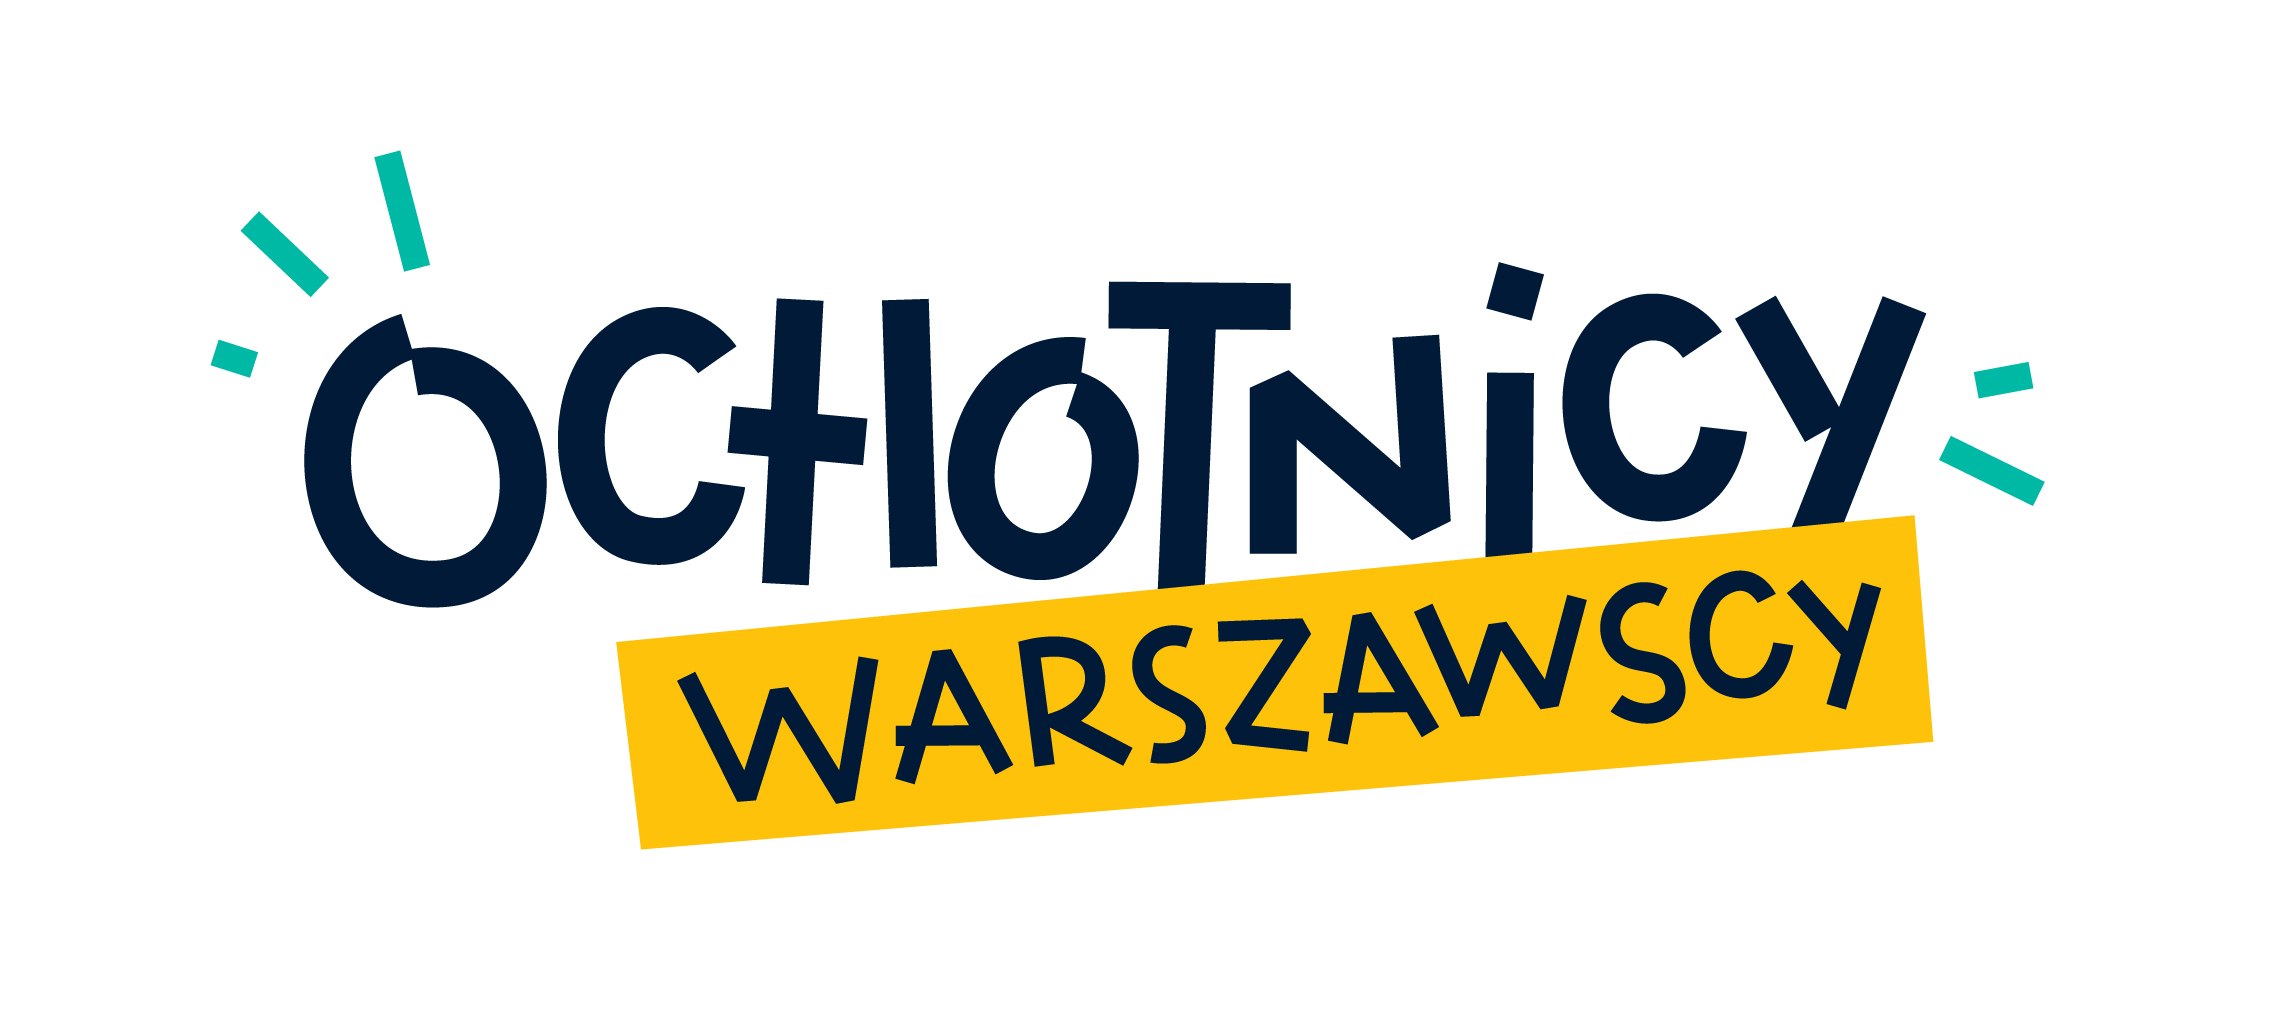 Logotyp projektu Ochotnicy warszawscy. Napis Ochotnicy warszawscy na białym tle.